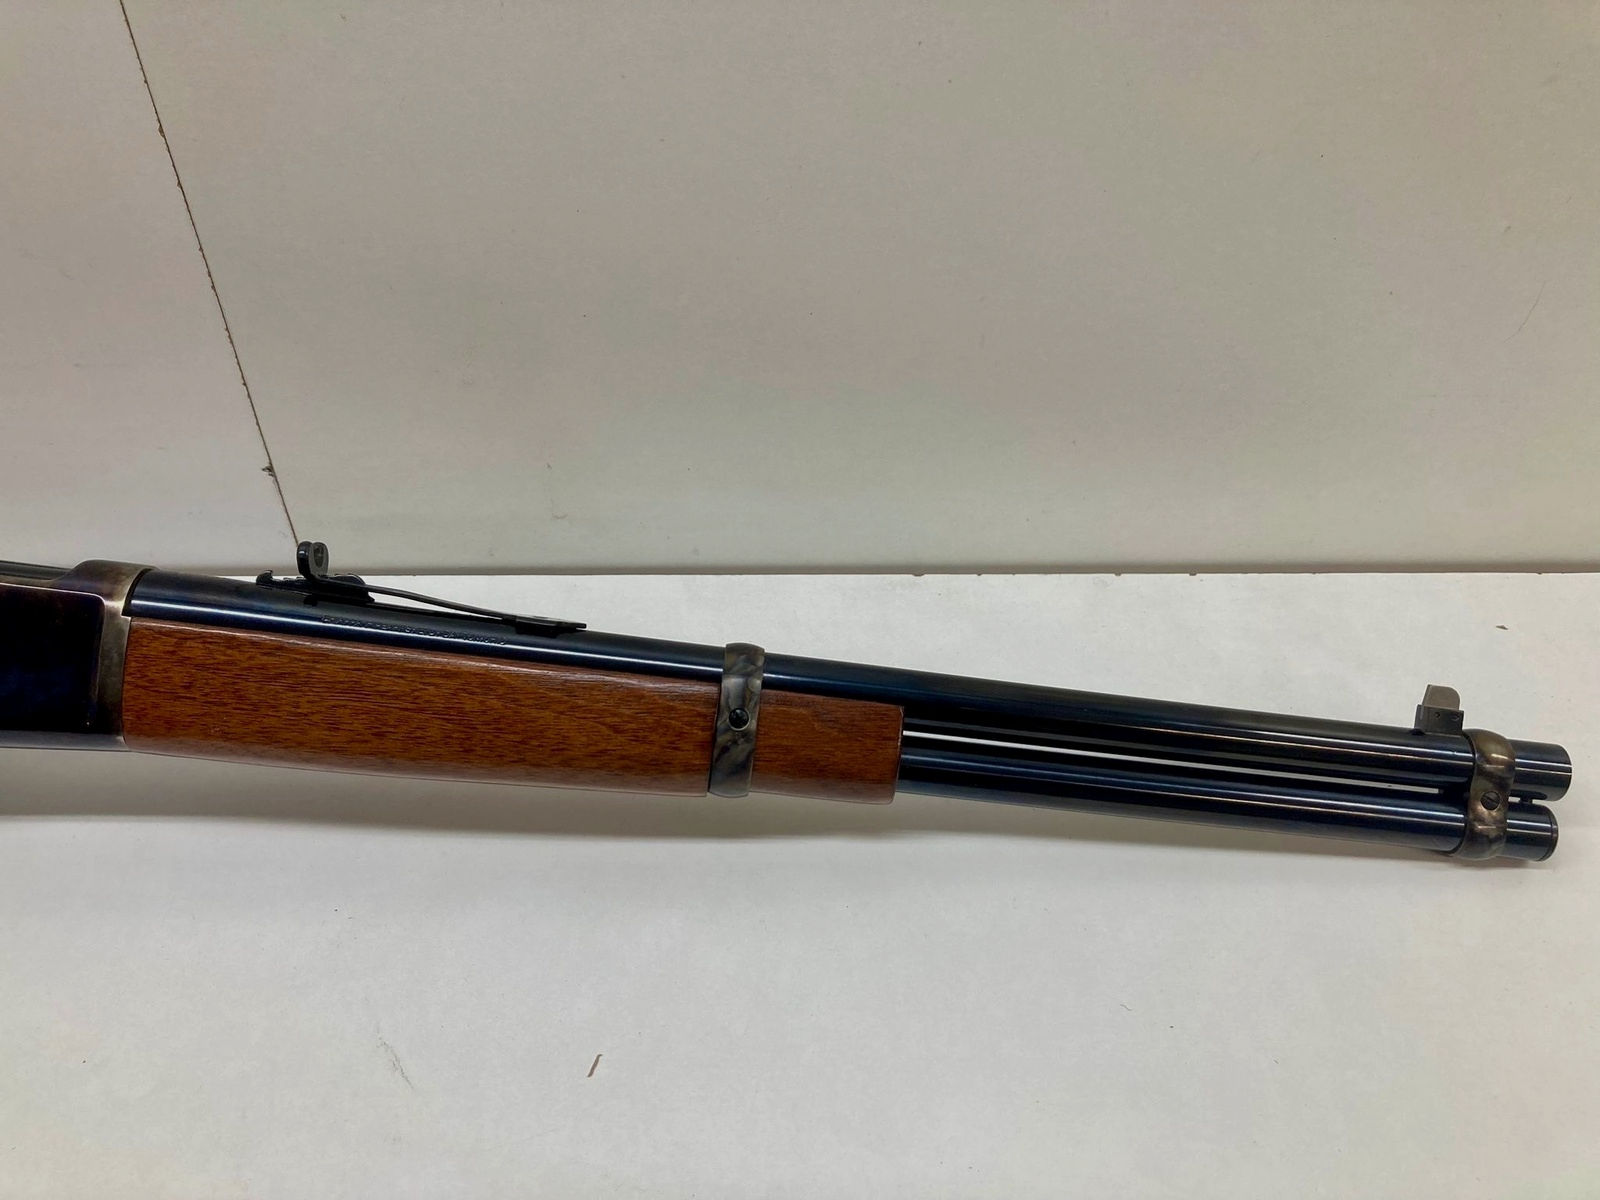 CHIAPPA 1892 Carbine Trapper 16" UHR - WaffenFriedrichs